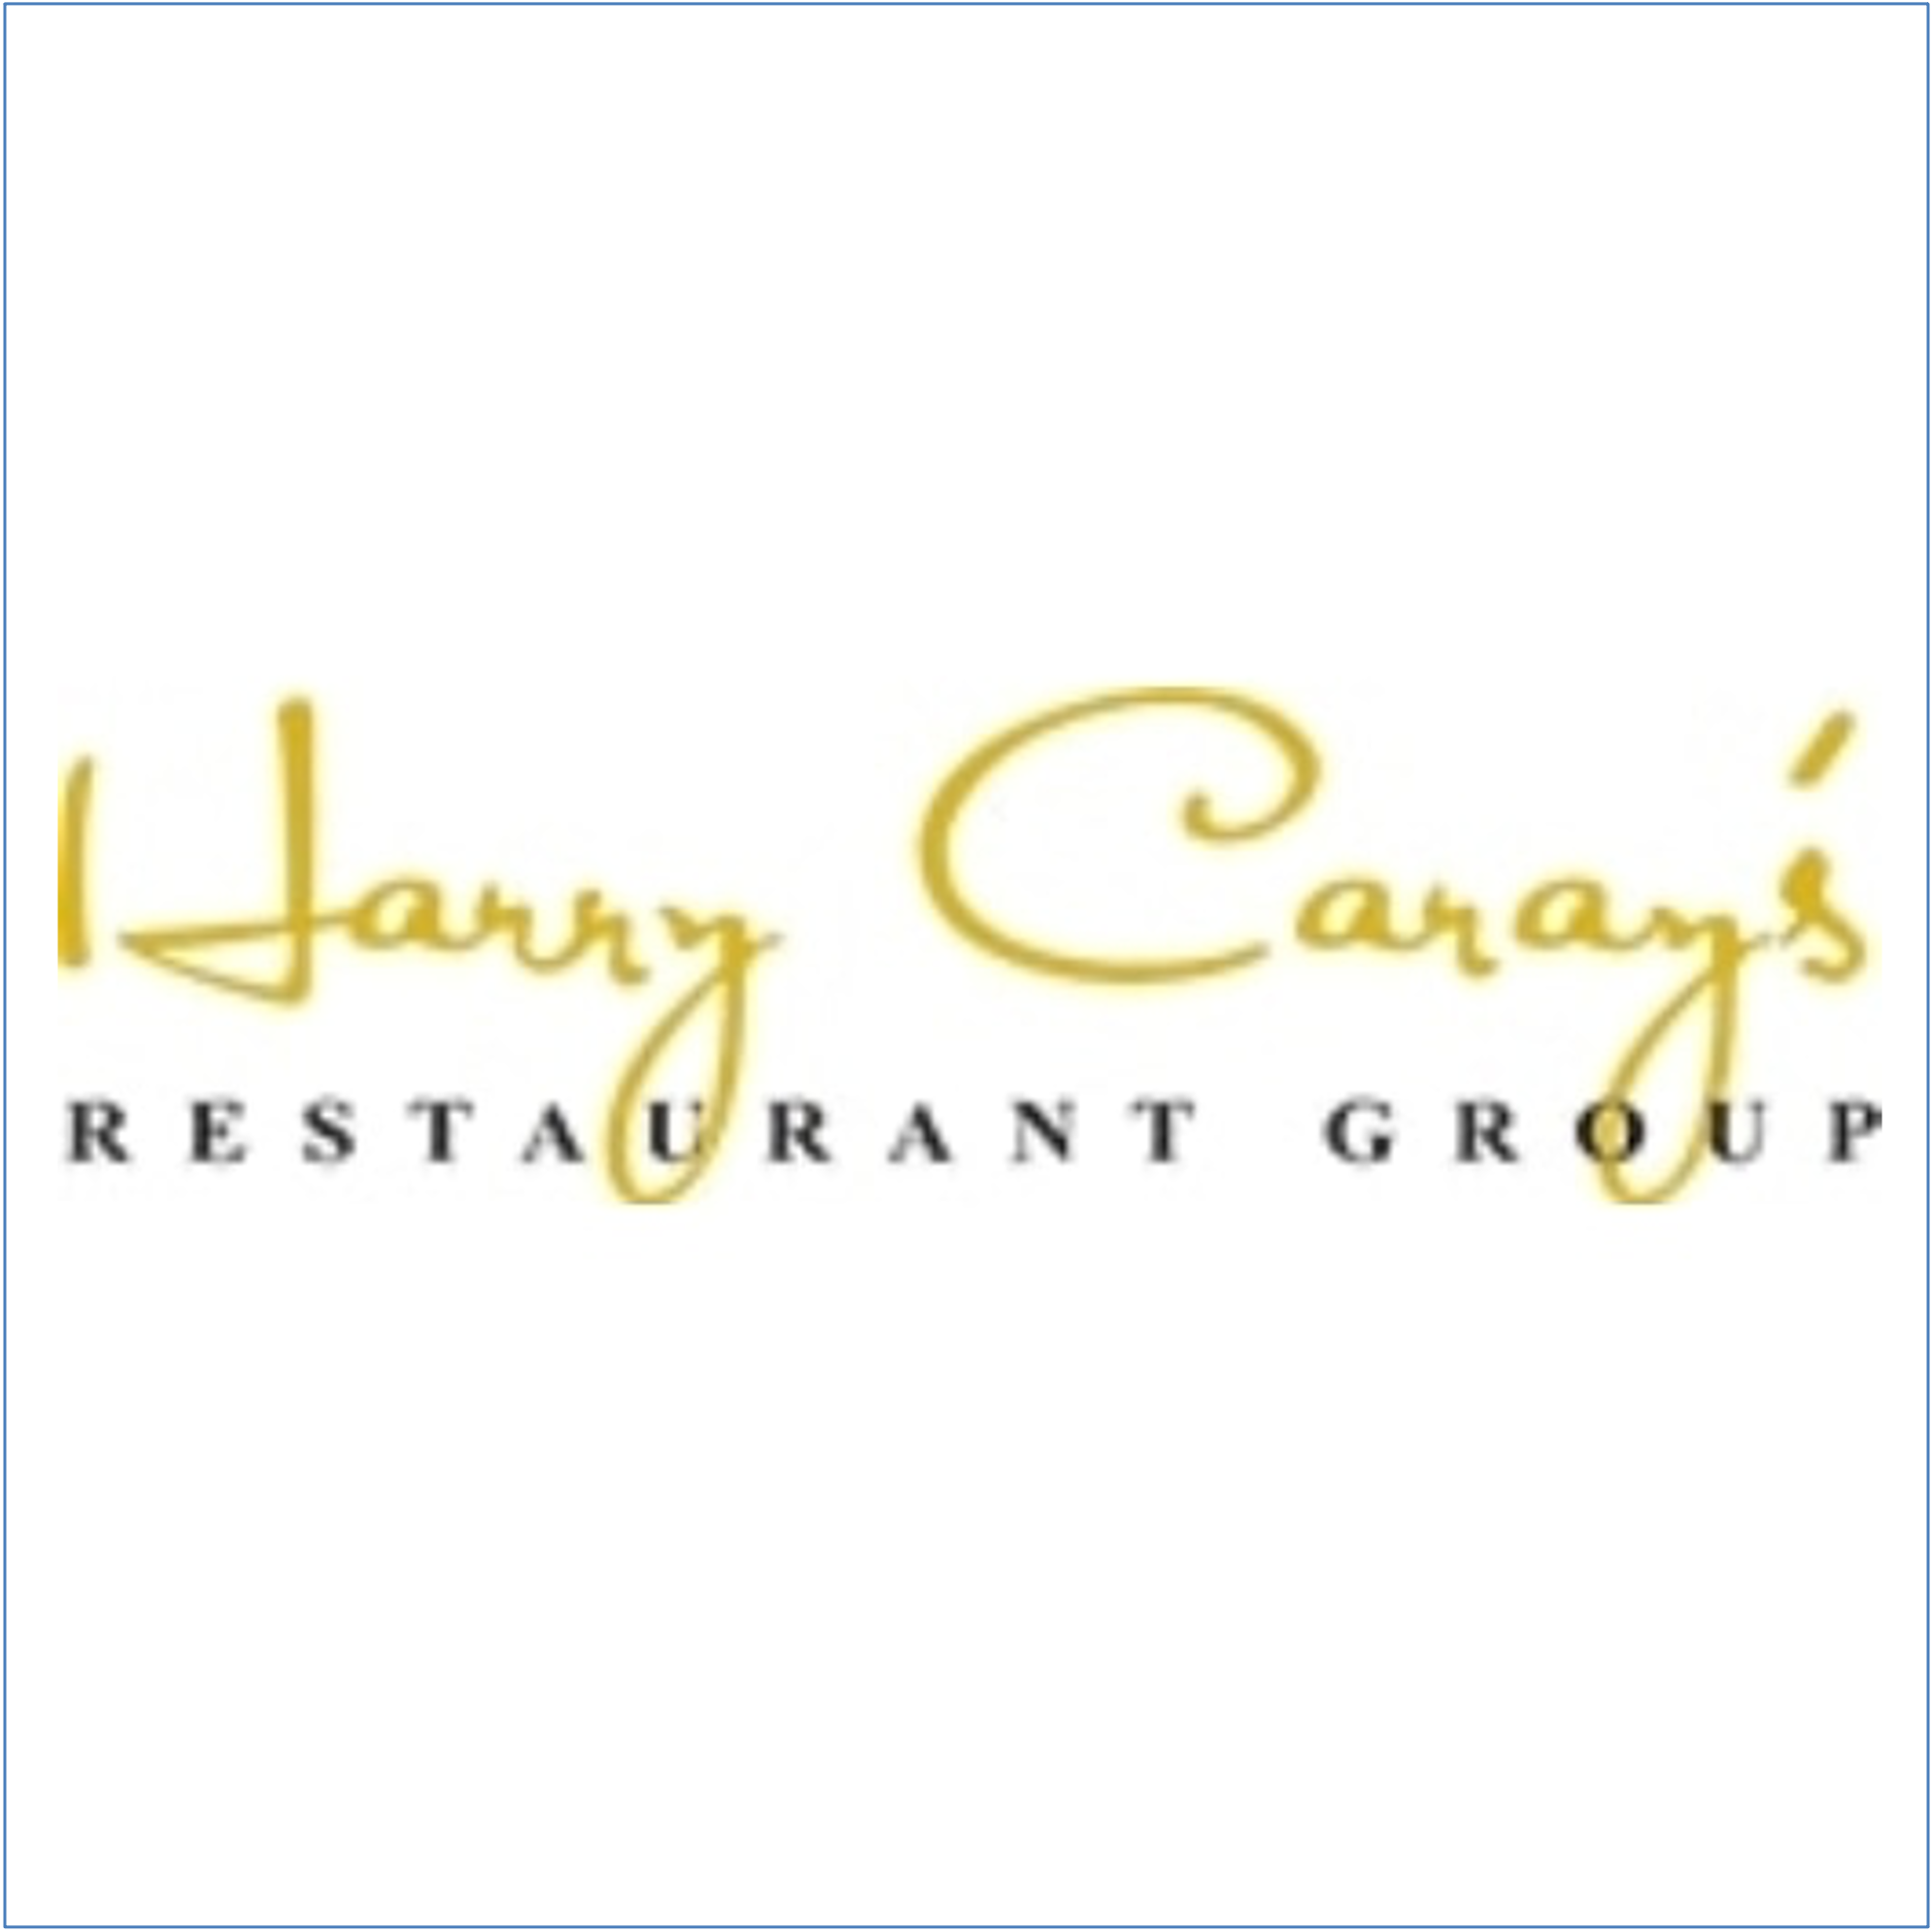 Harry Caray's